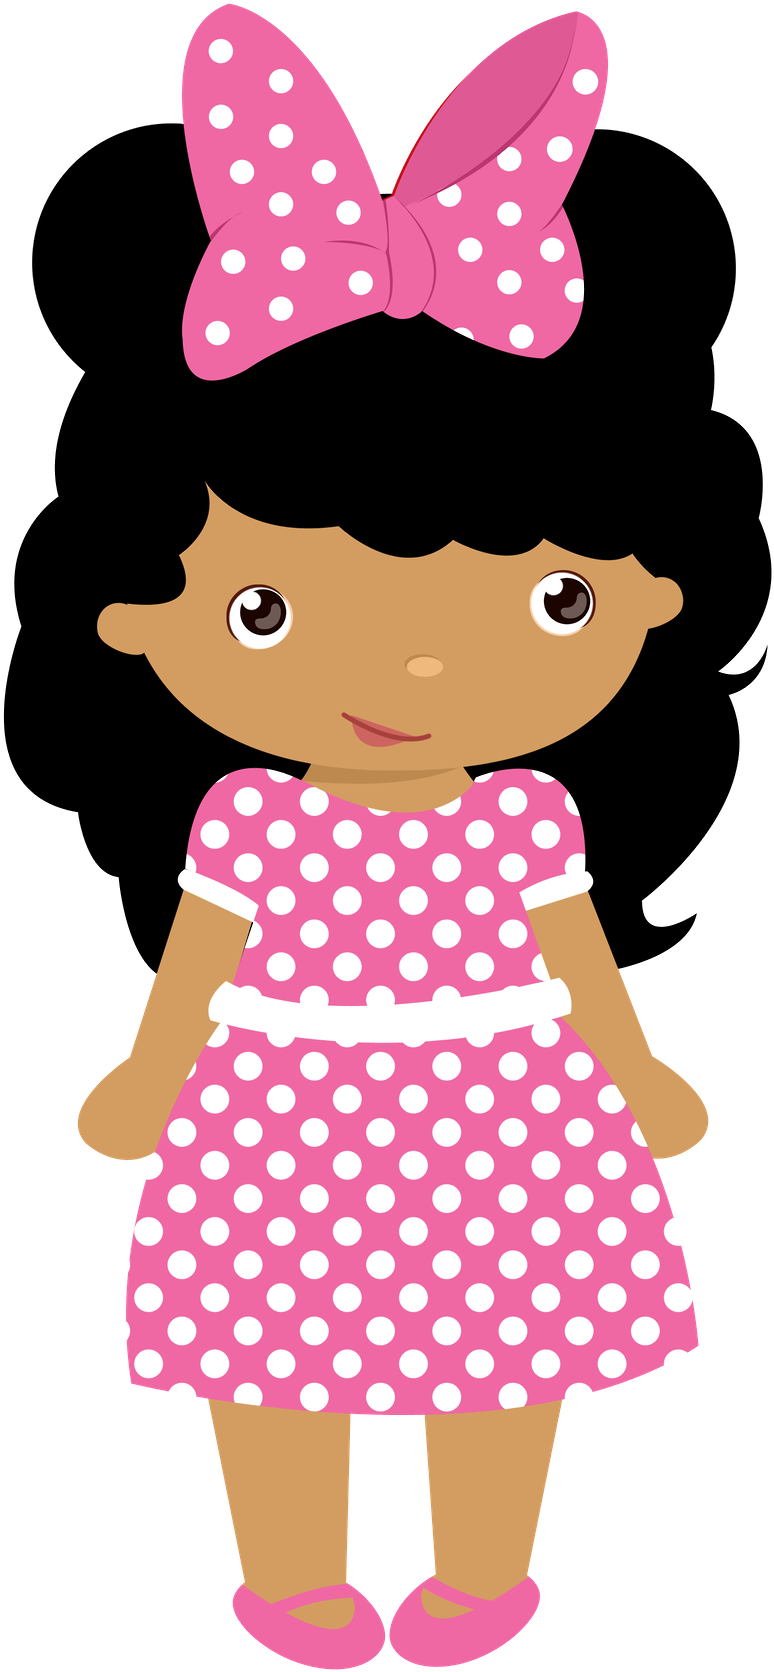 Polka Dot Dress Cartoon Character PNG image